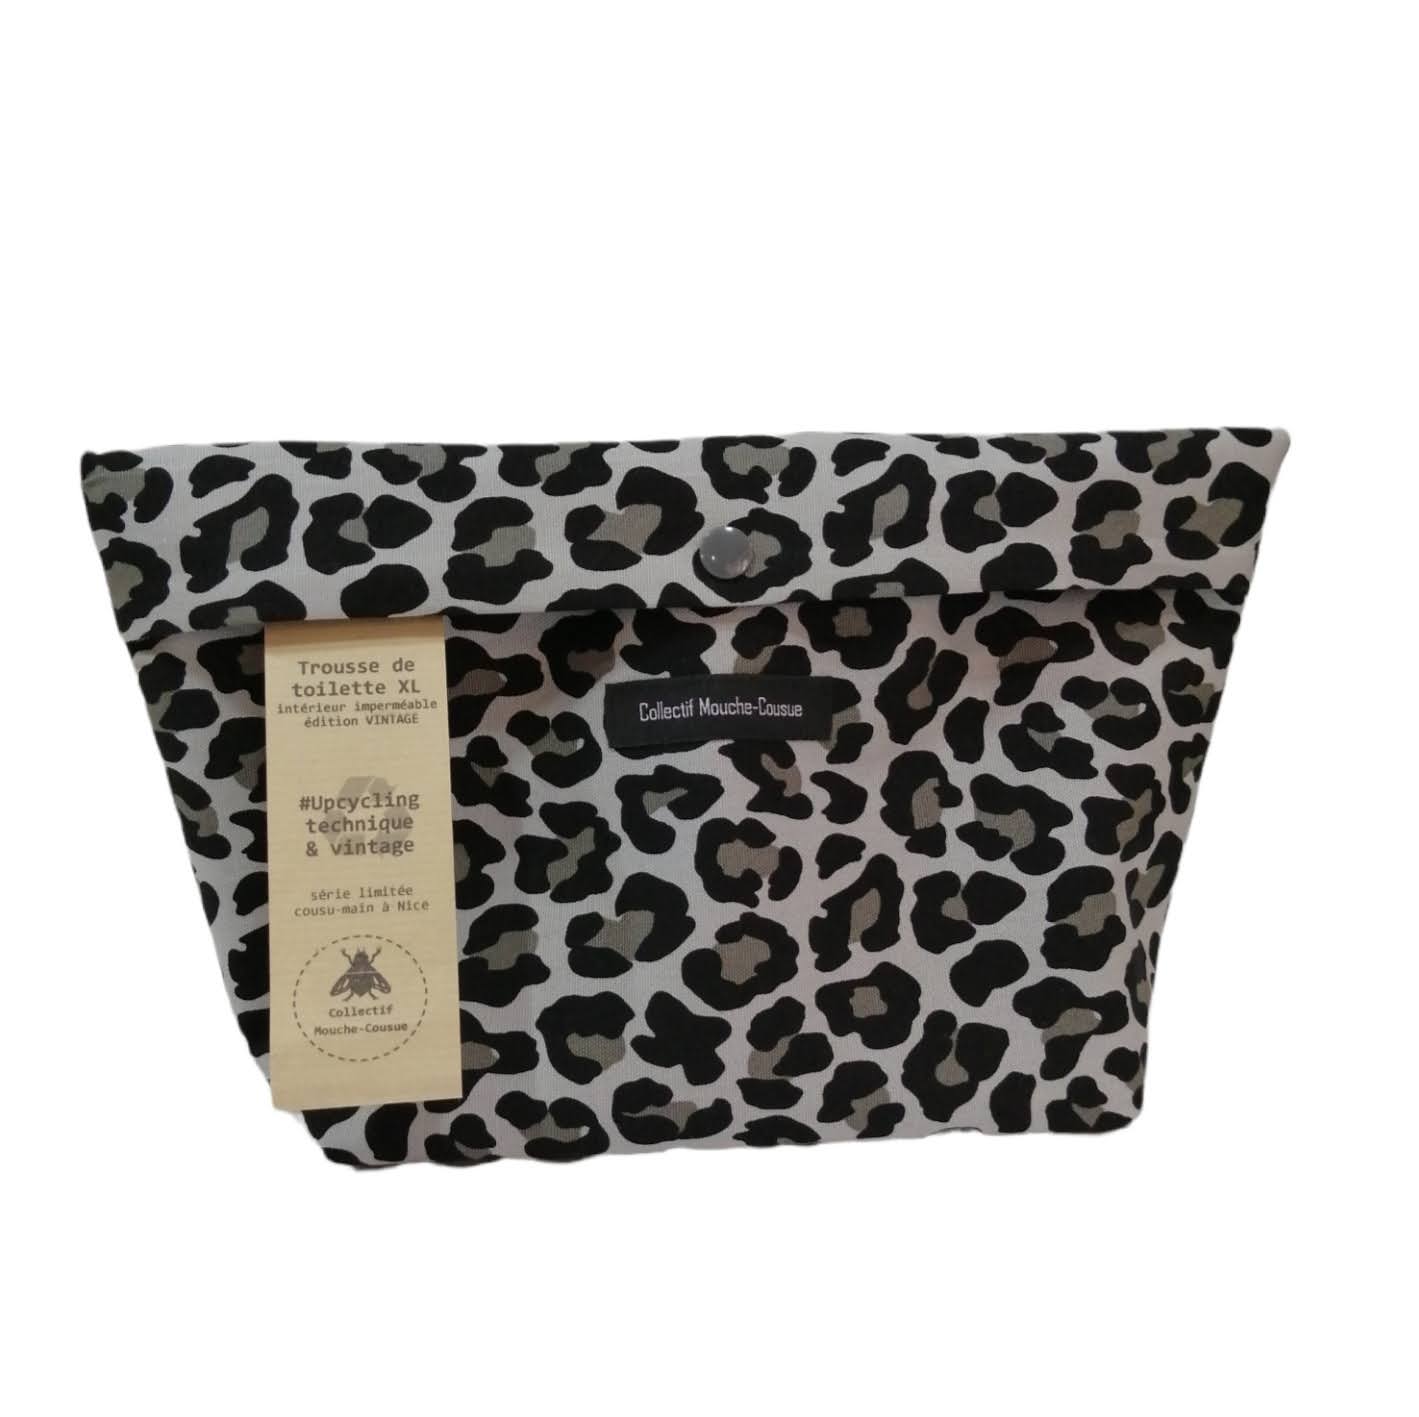 Trousse de toilette XL - grey leopard (Upcycling & Designer's fabric)